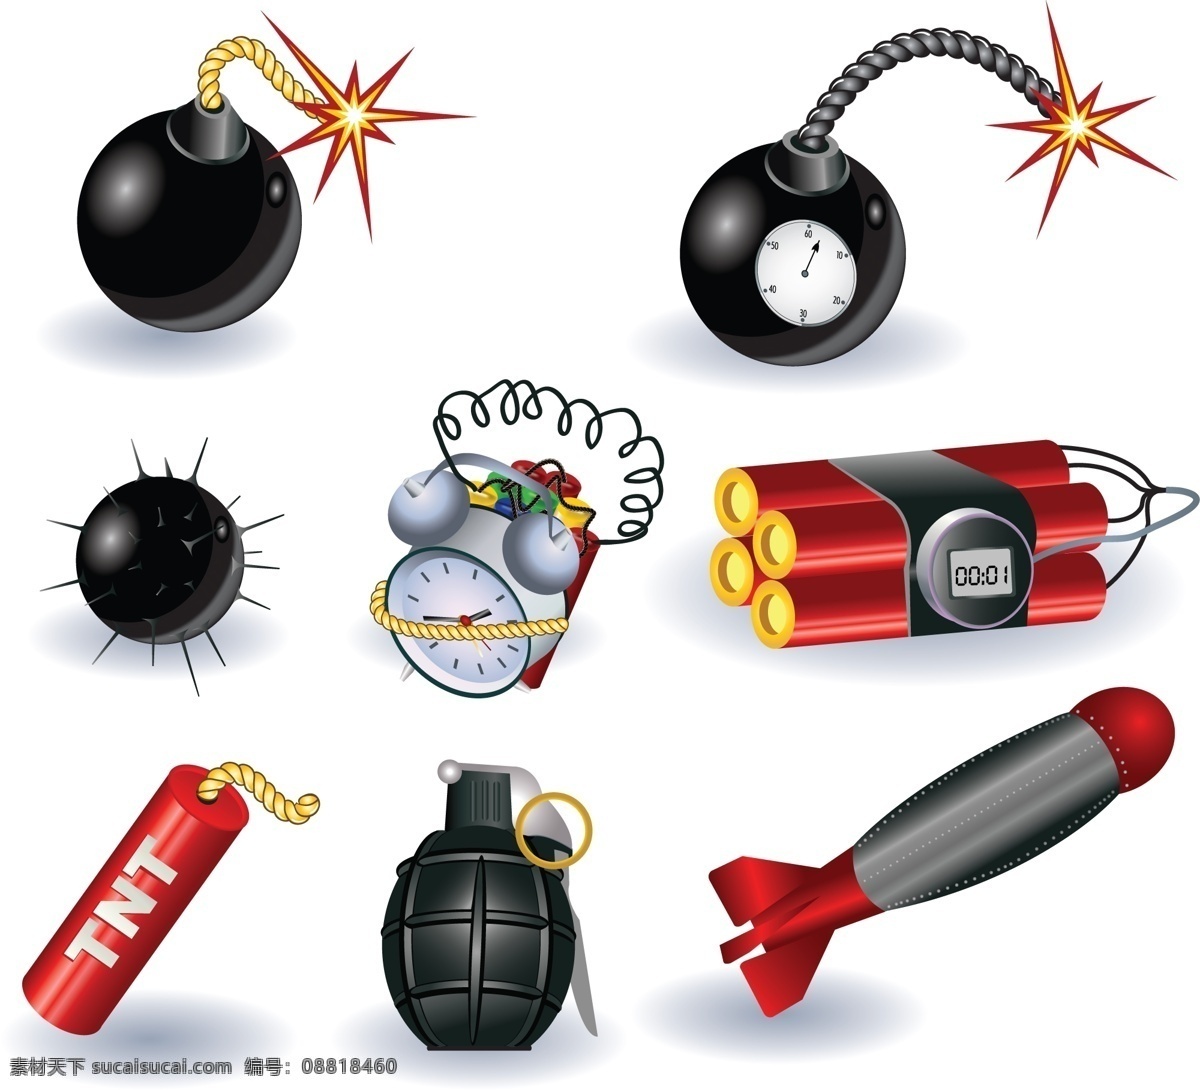 炸弹 装置 单位 计划 可爱 技术向量 向量炸弹武器 装备 矢量图 其他矢量图